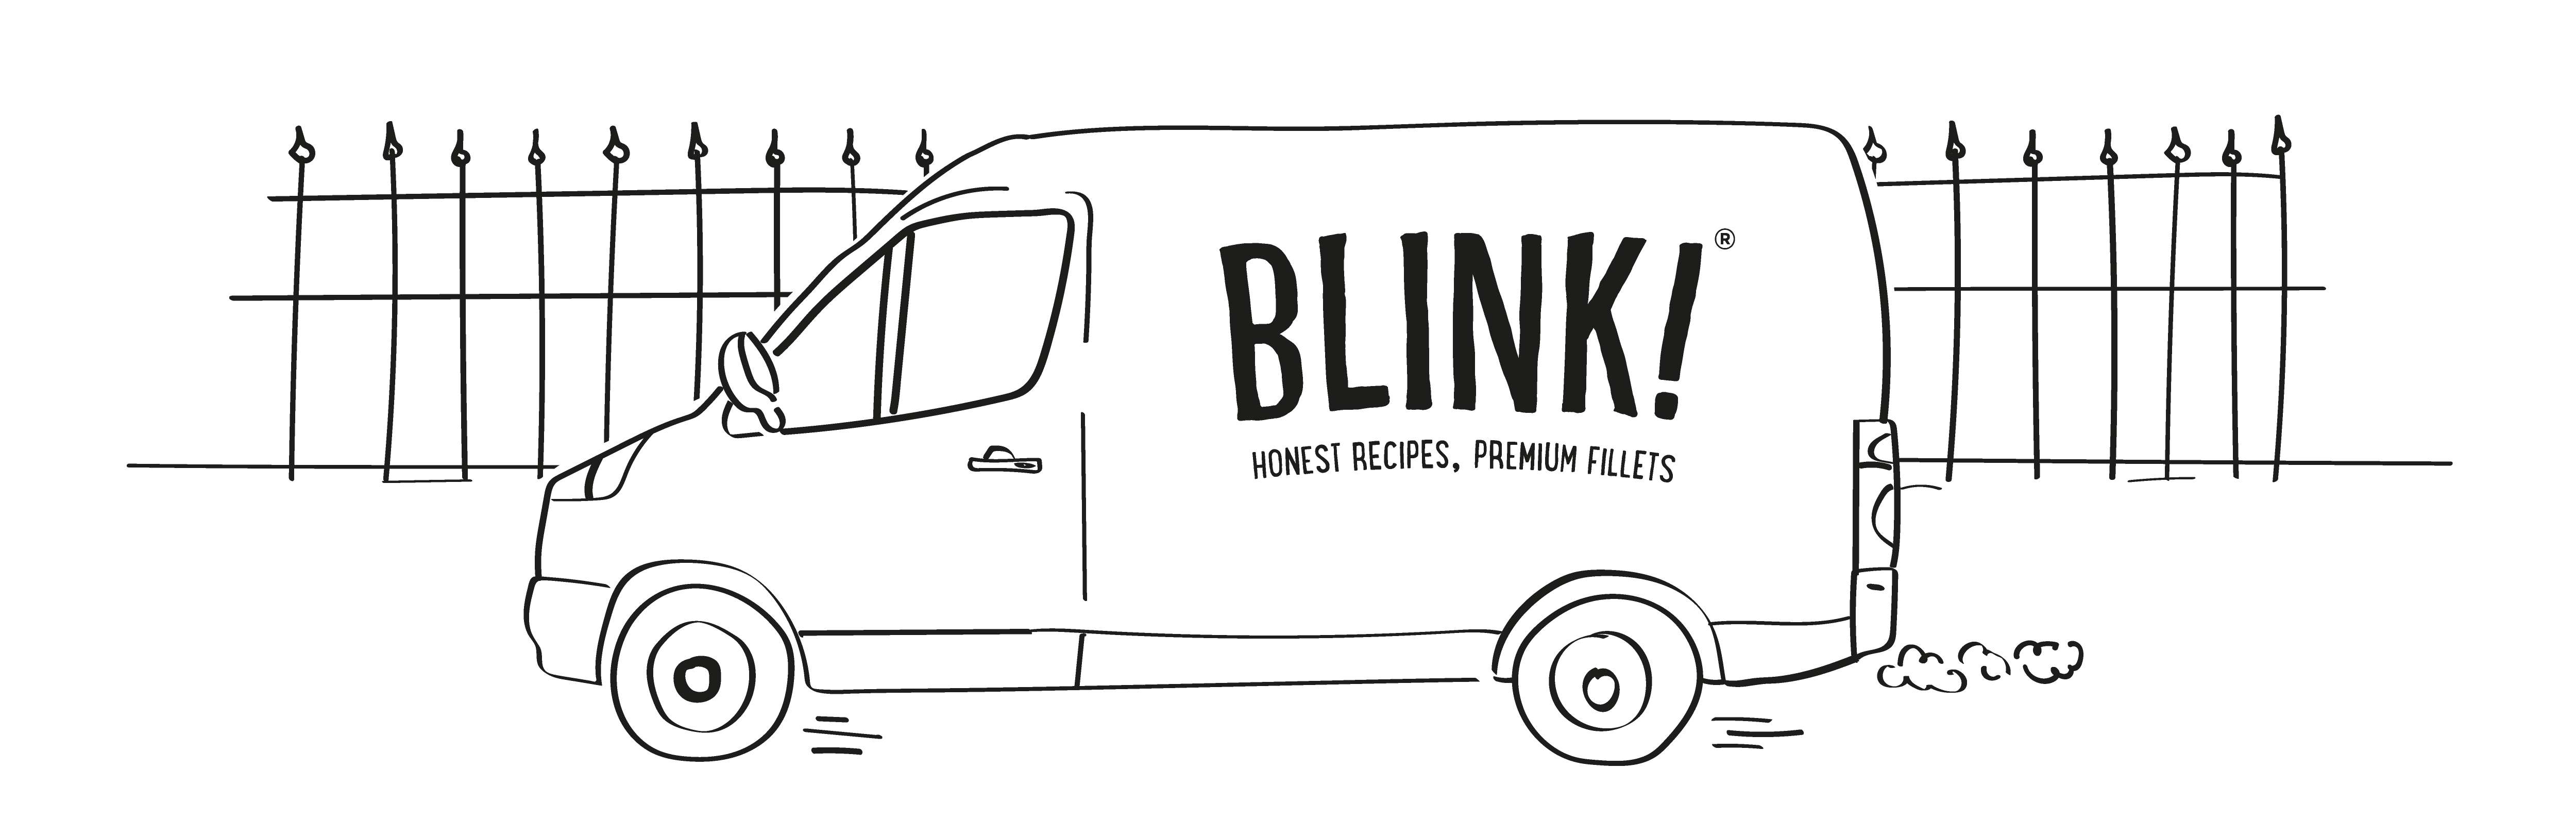 Sketch of a Blink van